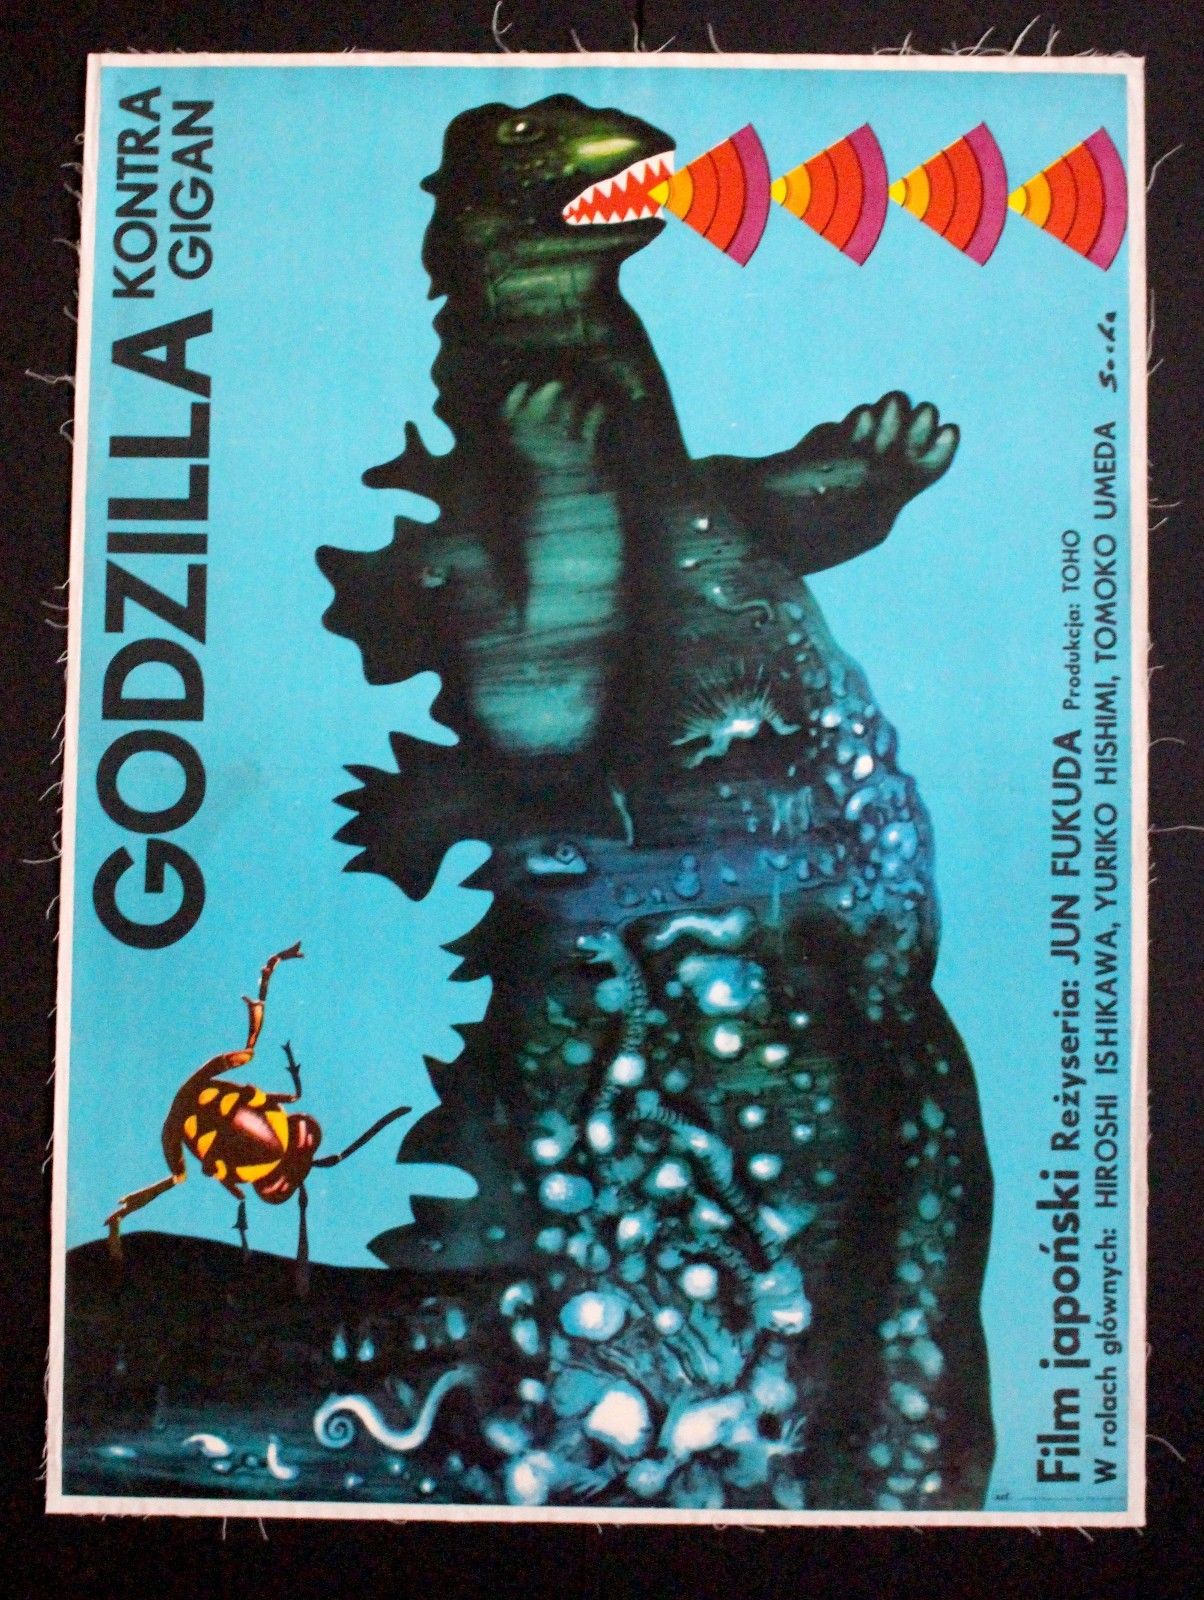 Top 5 des objets Godzilla récemment vendus sur eBay